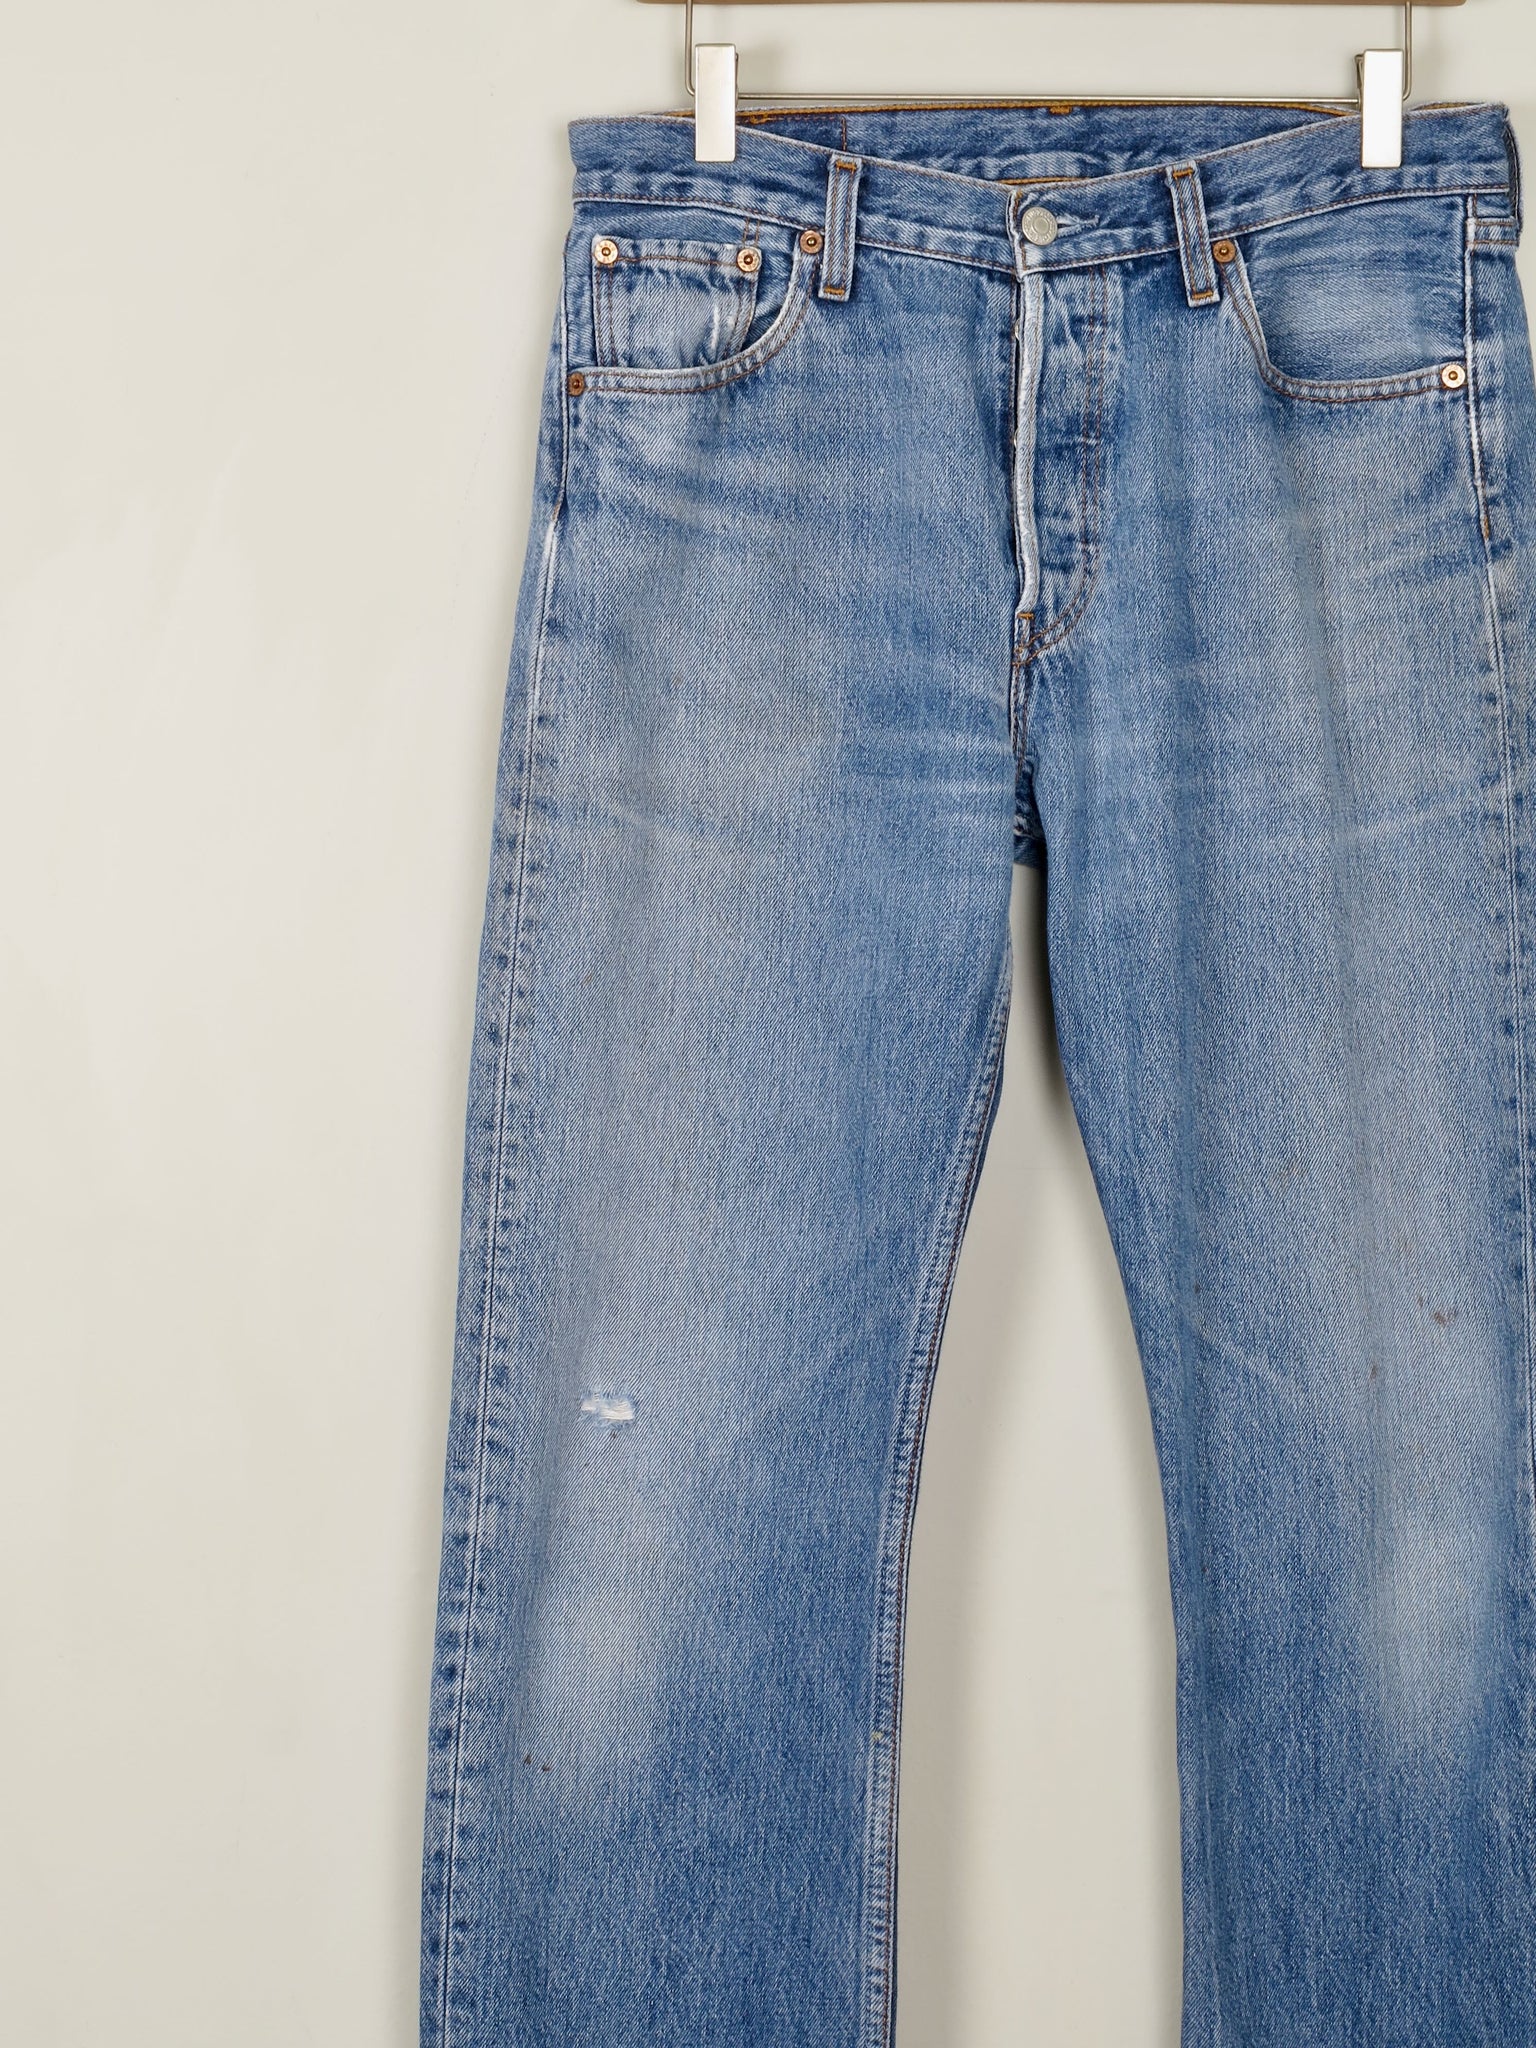 Men's Vintage Blue Levi’s Jeans 30/30 Relaxed  Fit